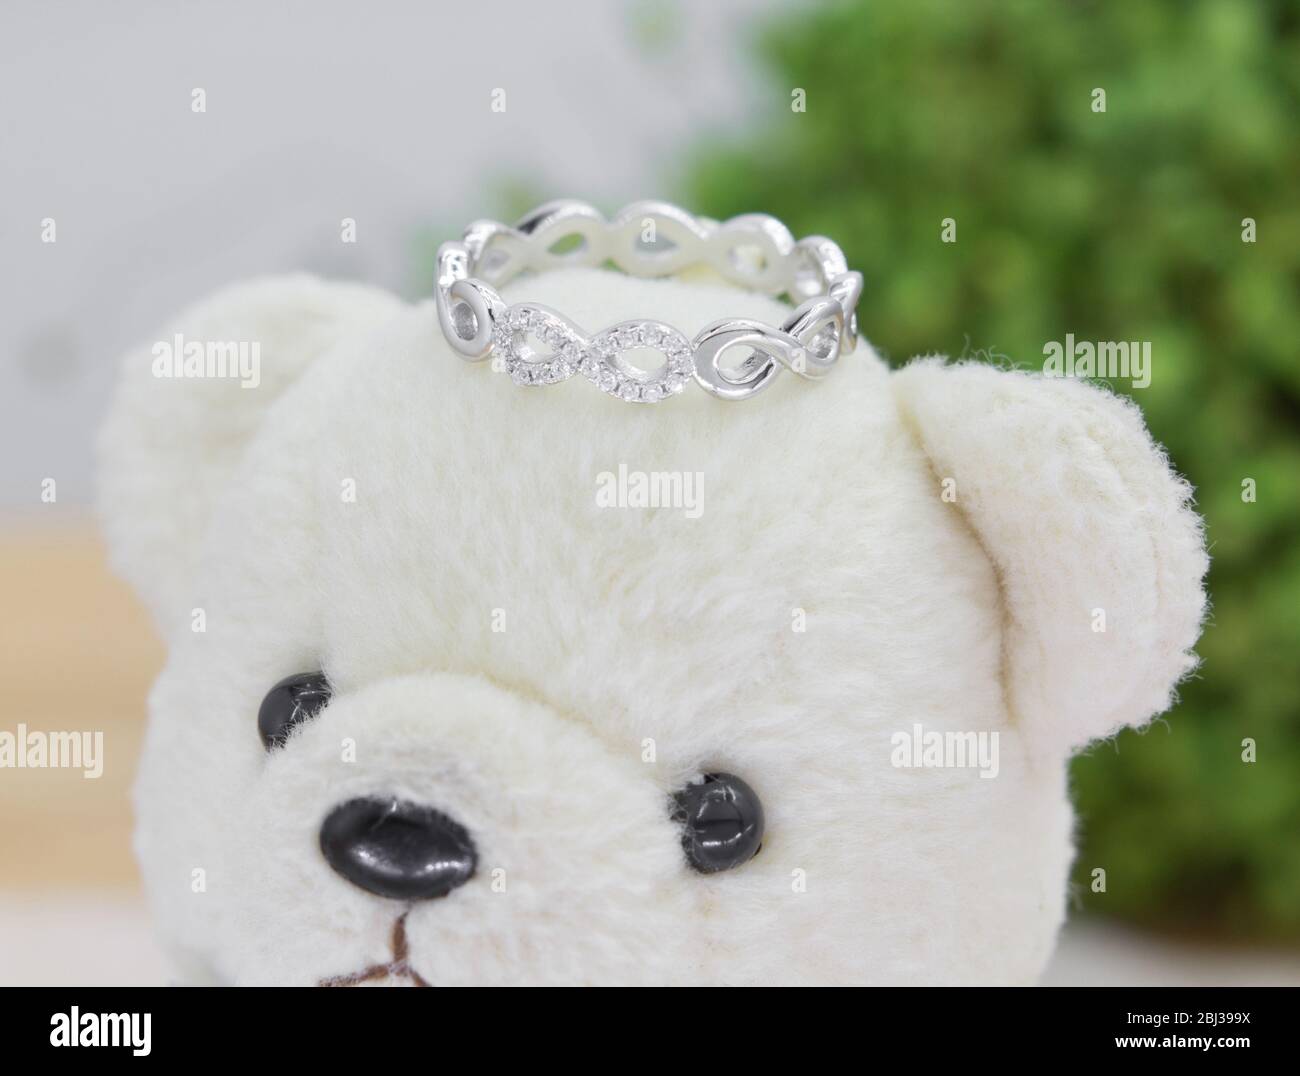 magnifique anneau argent en forme d'infini décoré de diamants s'affichant sur un ours en peluche Banque D'Images